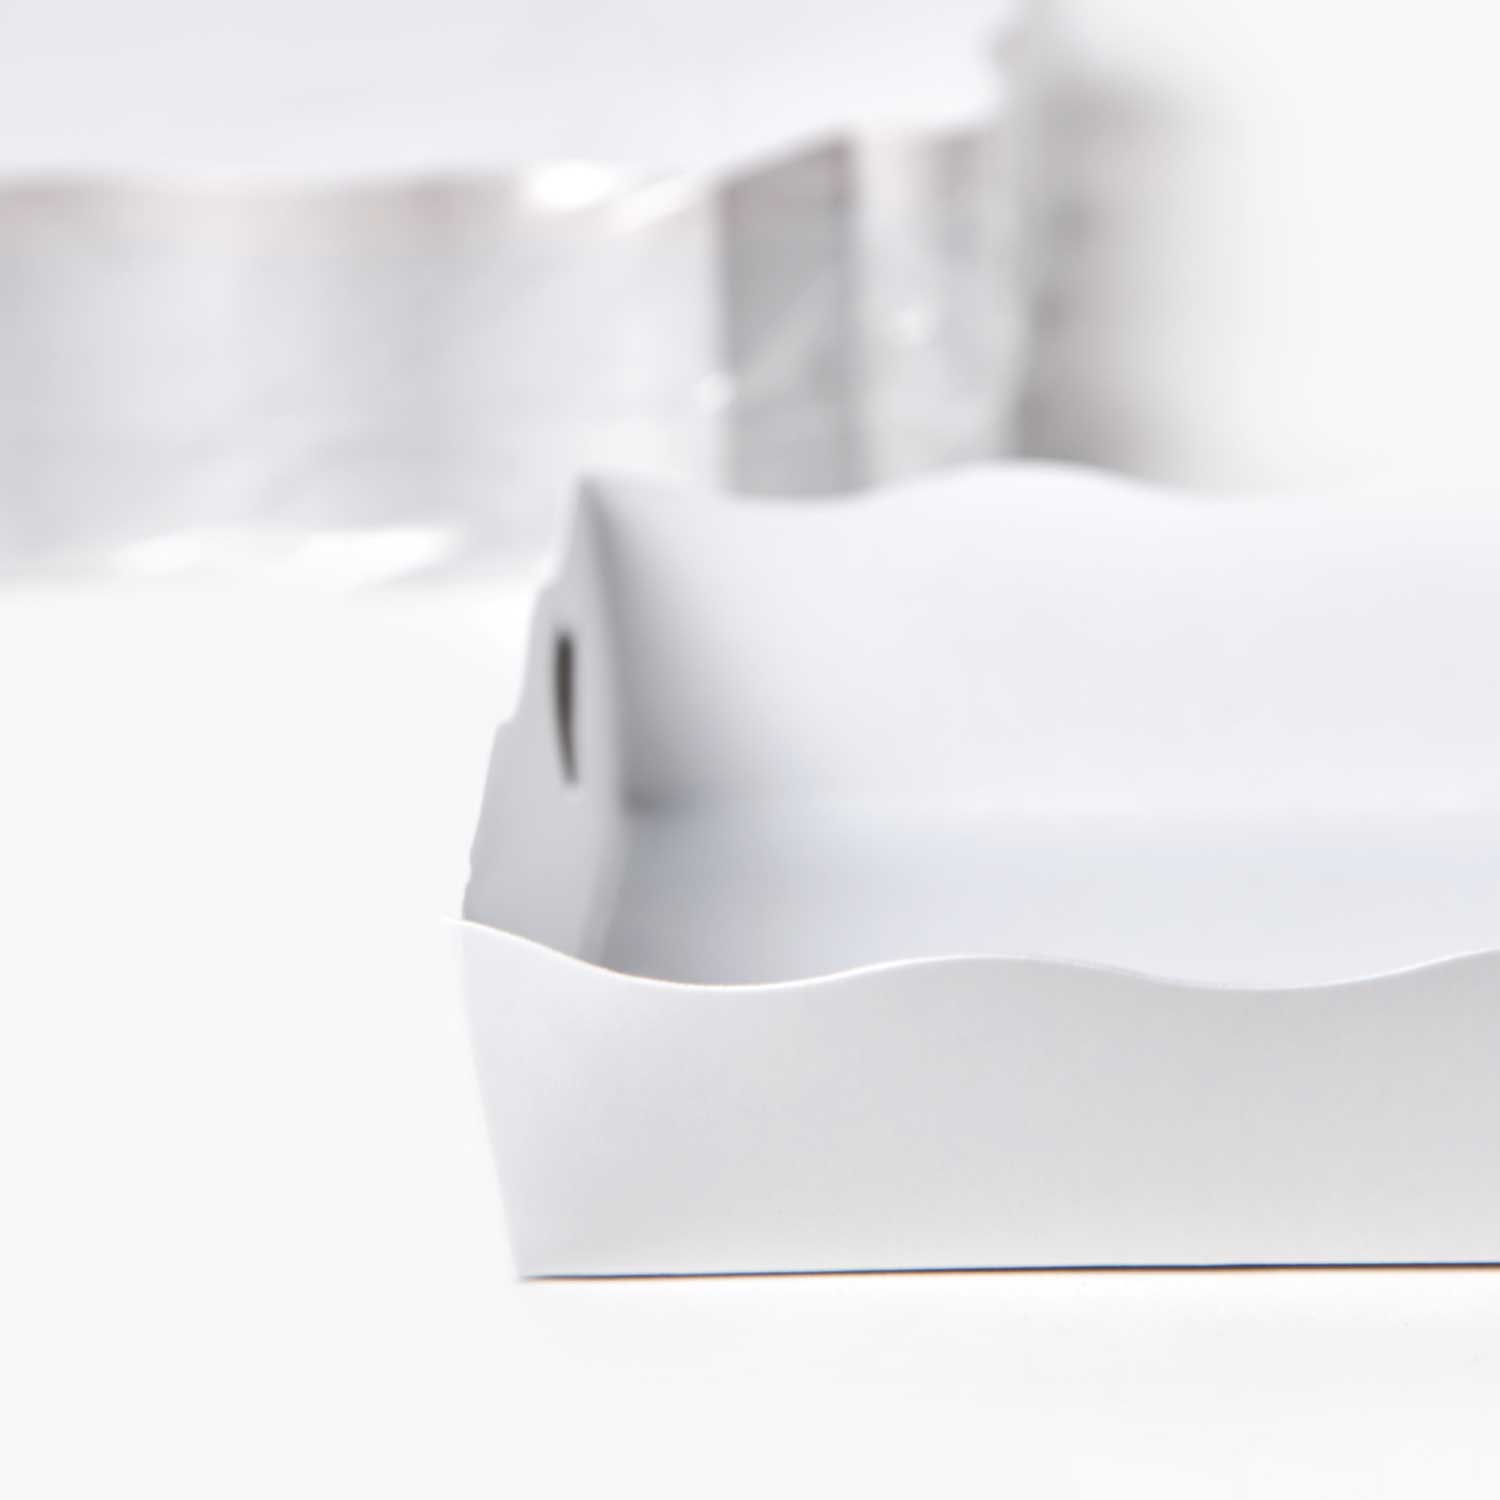 อุปกรณ์เบเกอรี่ : SYNOVA ถาดกระดาษอาหารสีขาว Size4x6 (แพ็ค)